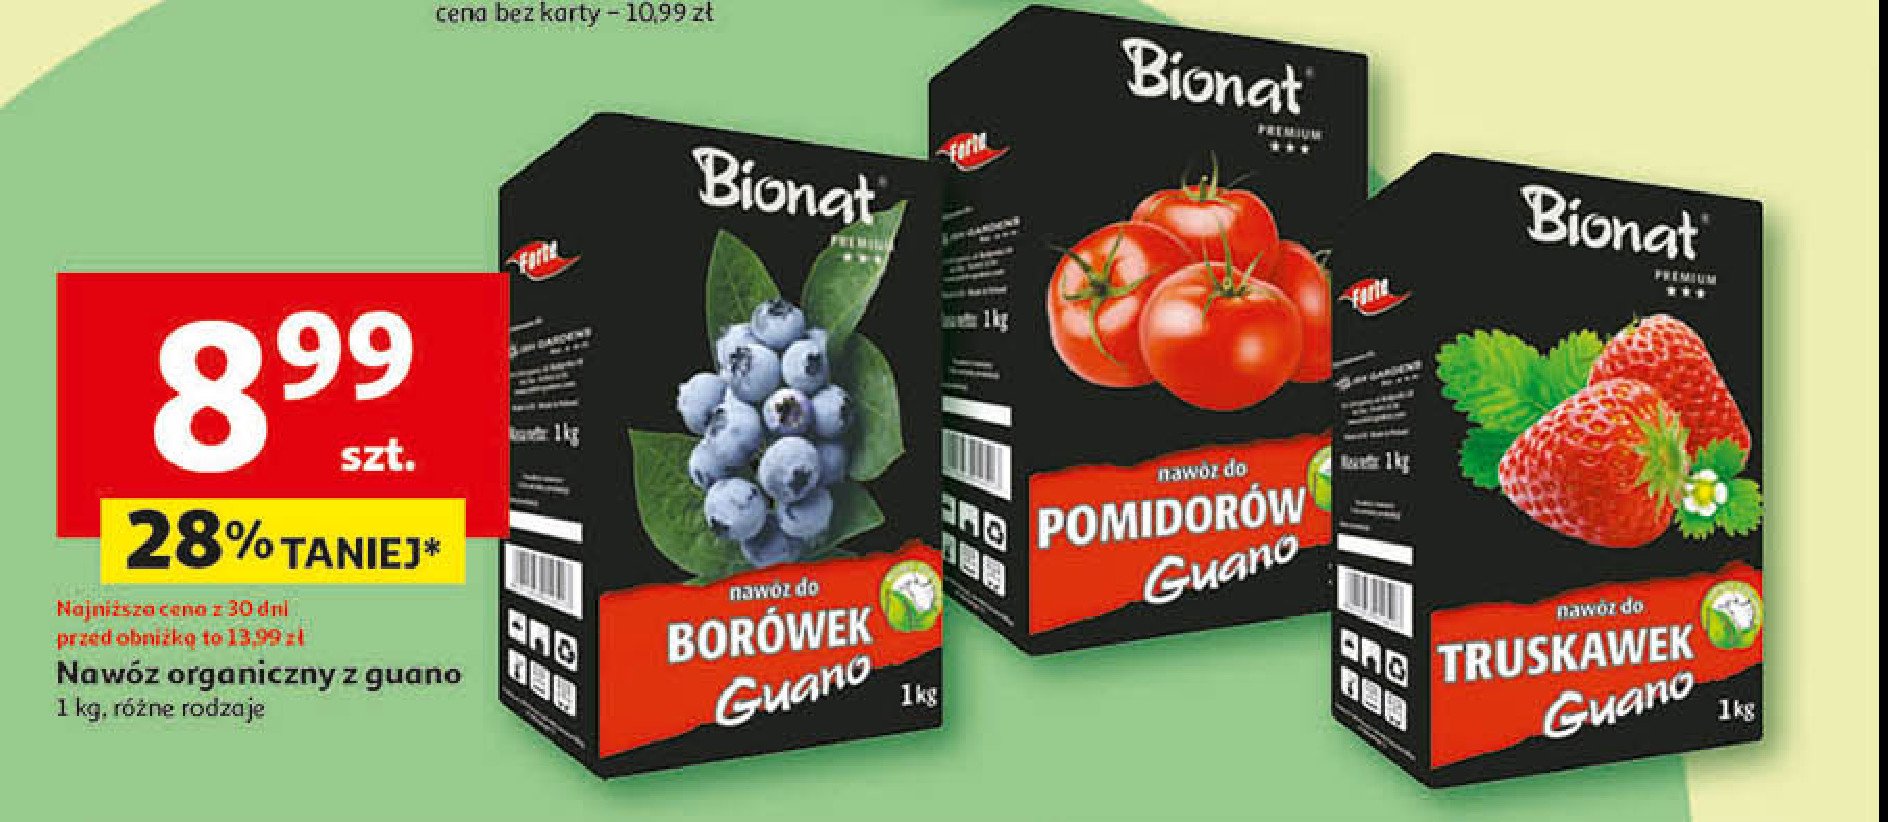 Nawóz bionat do borówek GUANO promocja